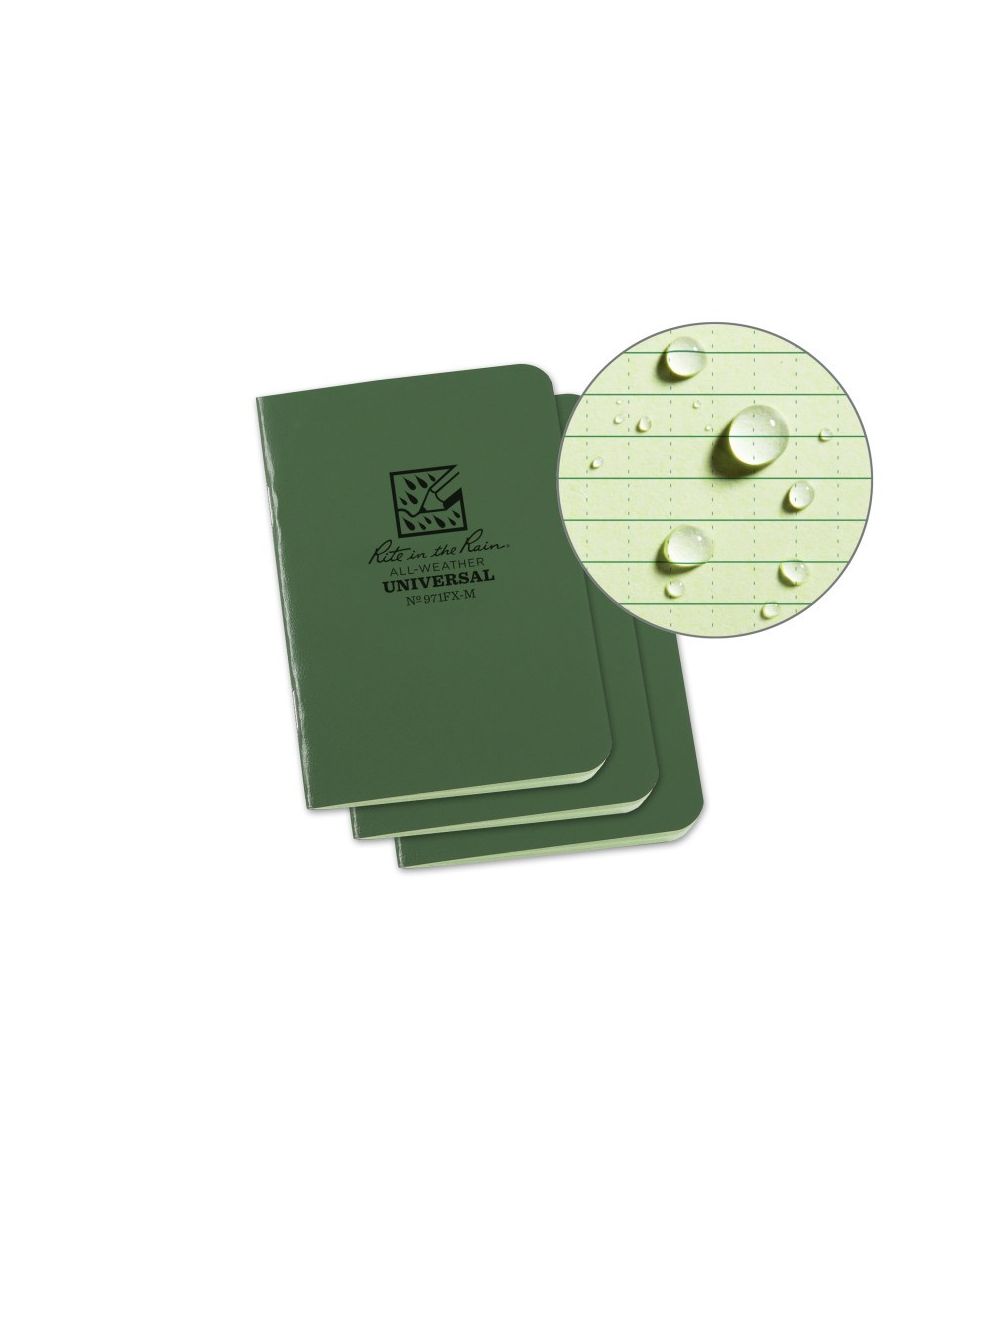 Fabrikoid Universal Mini Bound Book - 3.25 x 4.625 - Green - 3 Pack